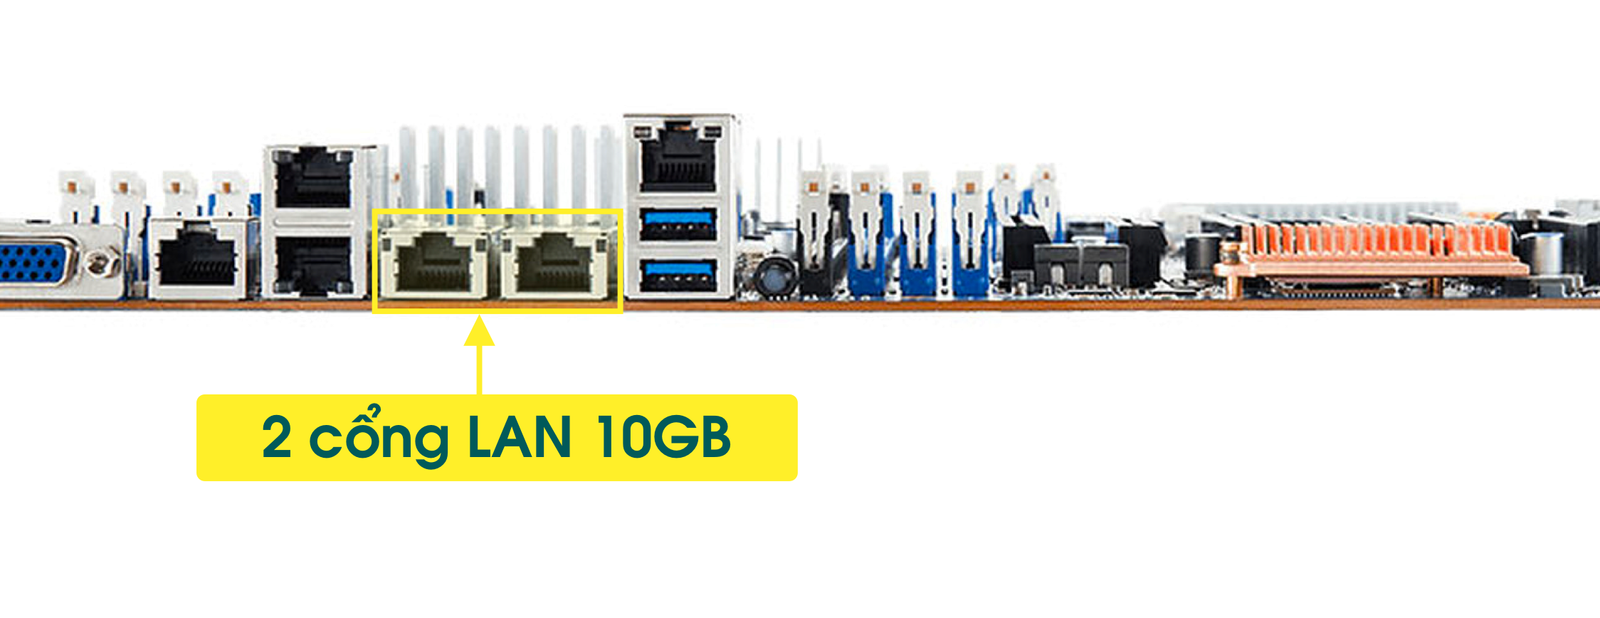 Gigabyte MD71-HBO còn được trang bị 2 cổng LAN tốc độ khủng 10GBs